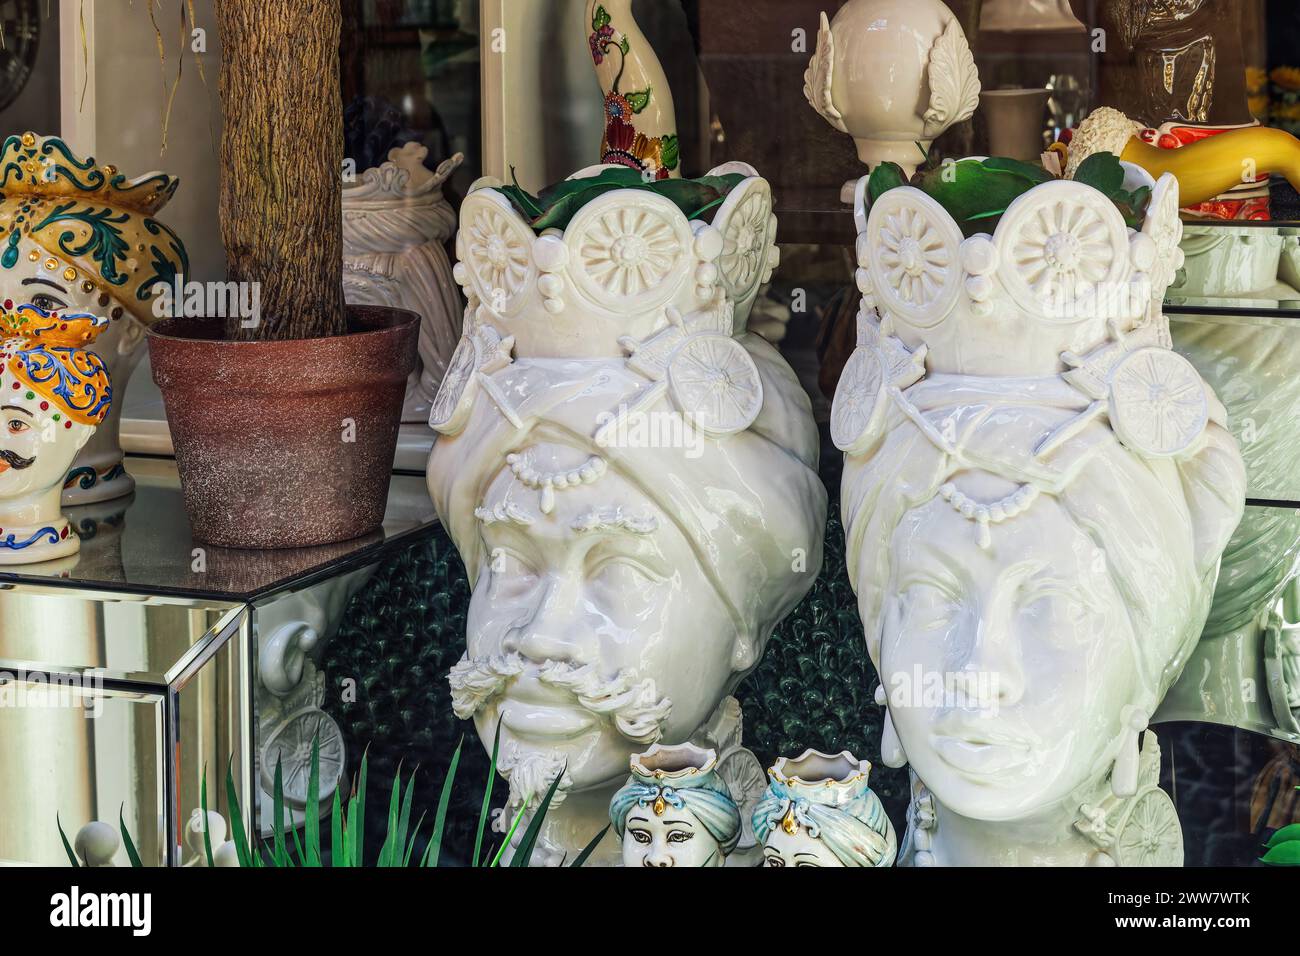 Dekorative Vasen aus sizilianischer Keramik mit maurischen Köpfen, die die Gesichter eines Mannes und einer Frau in einem Schaufenster in Agrigento, Italien, darstellen. Stockfoto